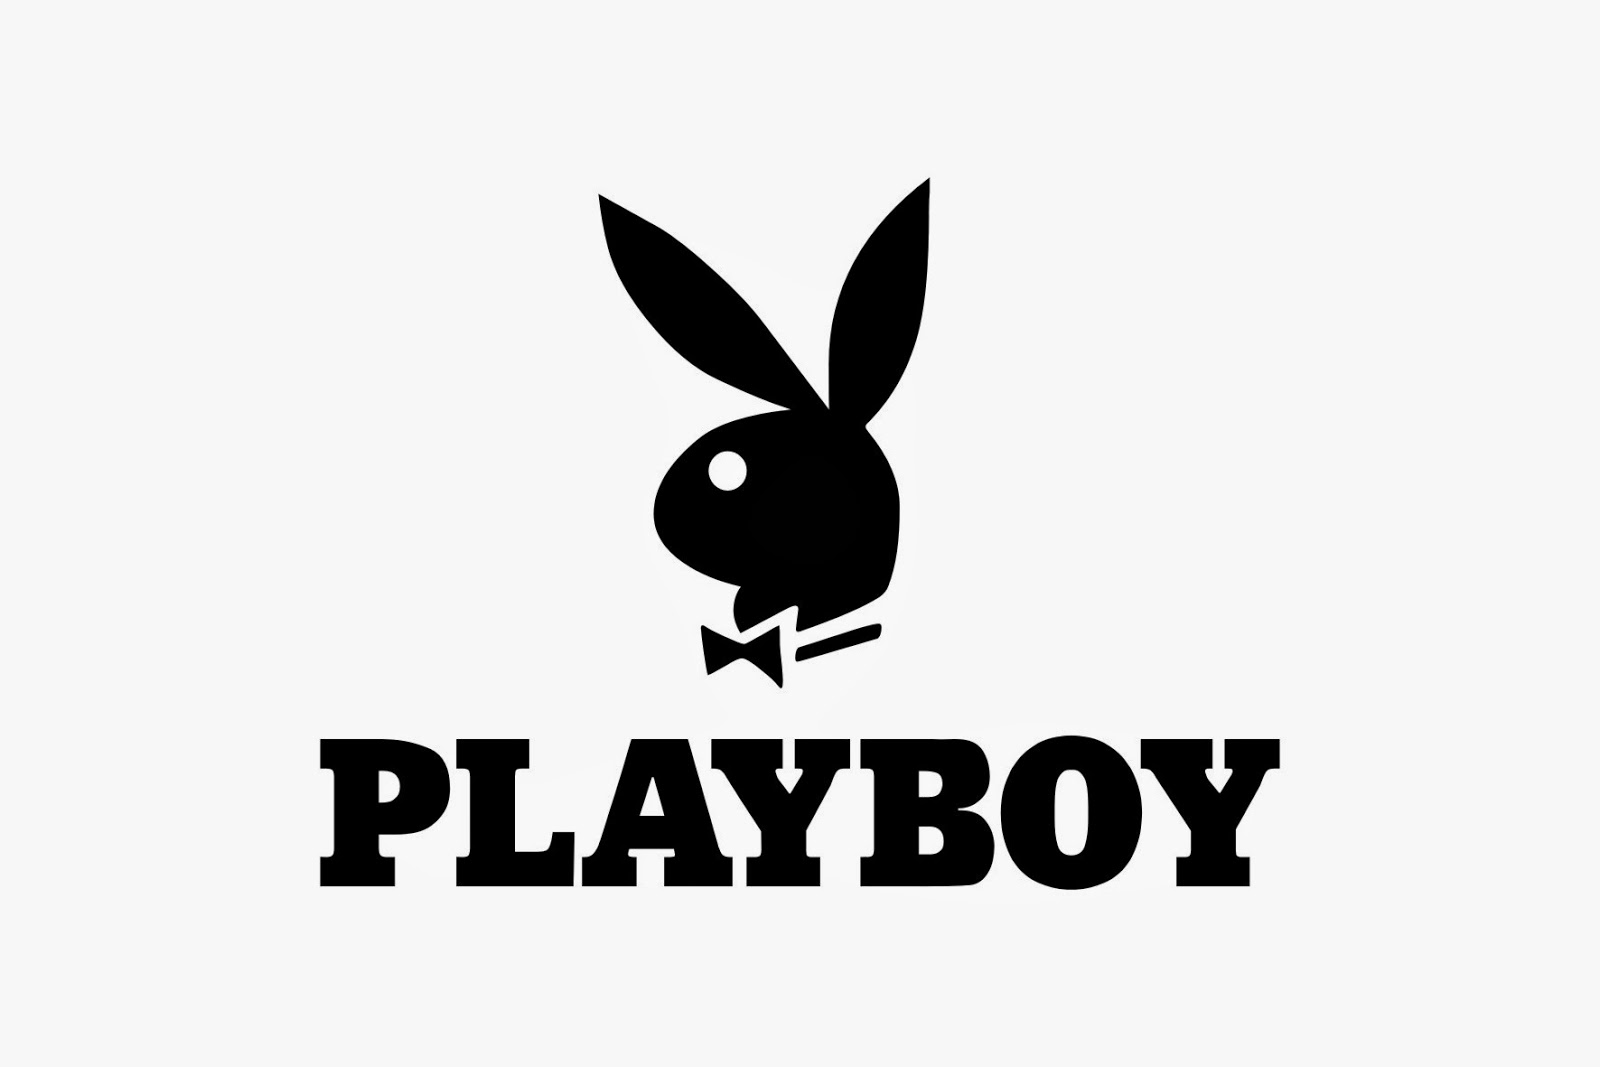 Playboy задумались над расширением бизнесса.